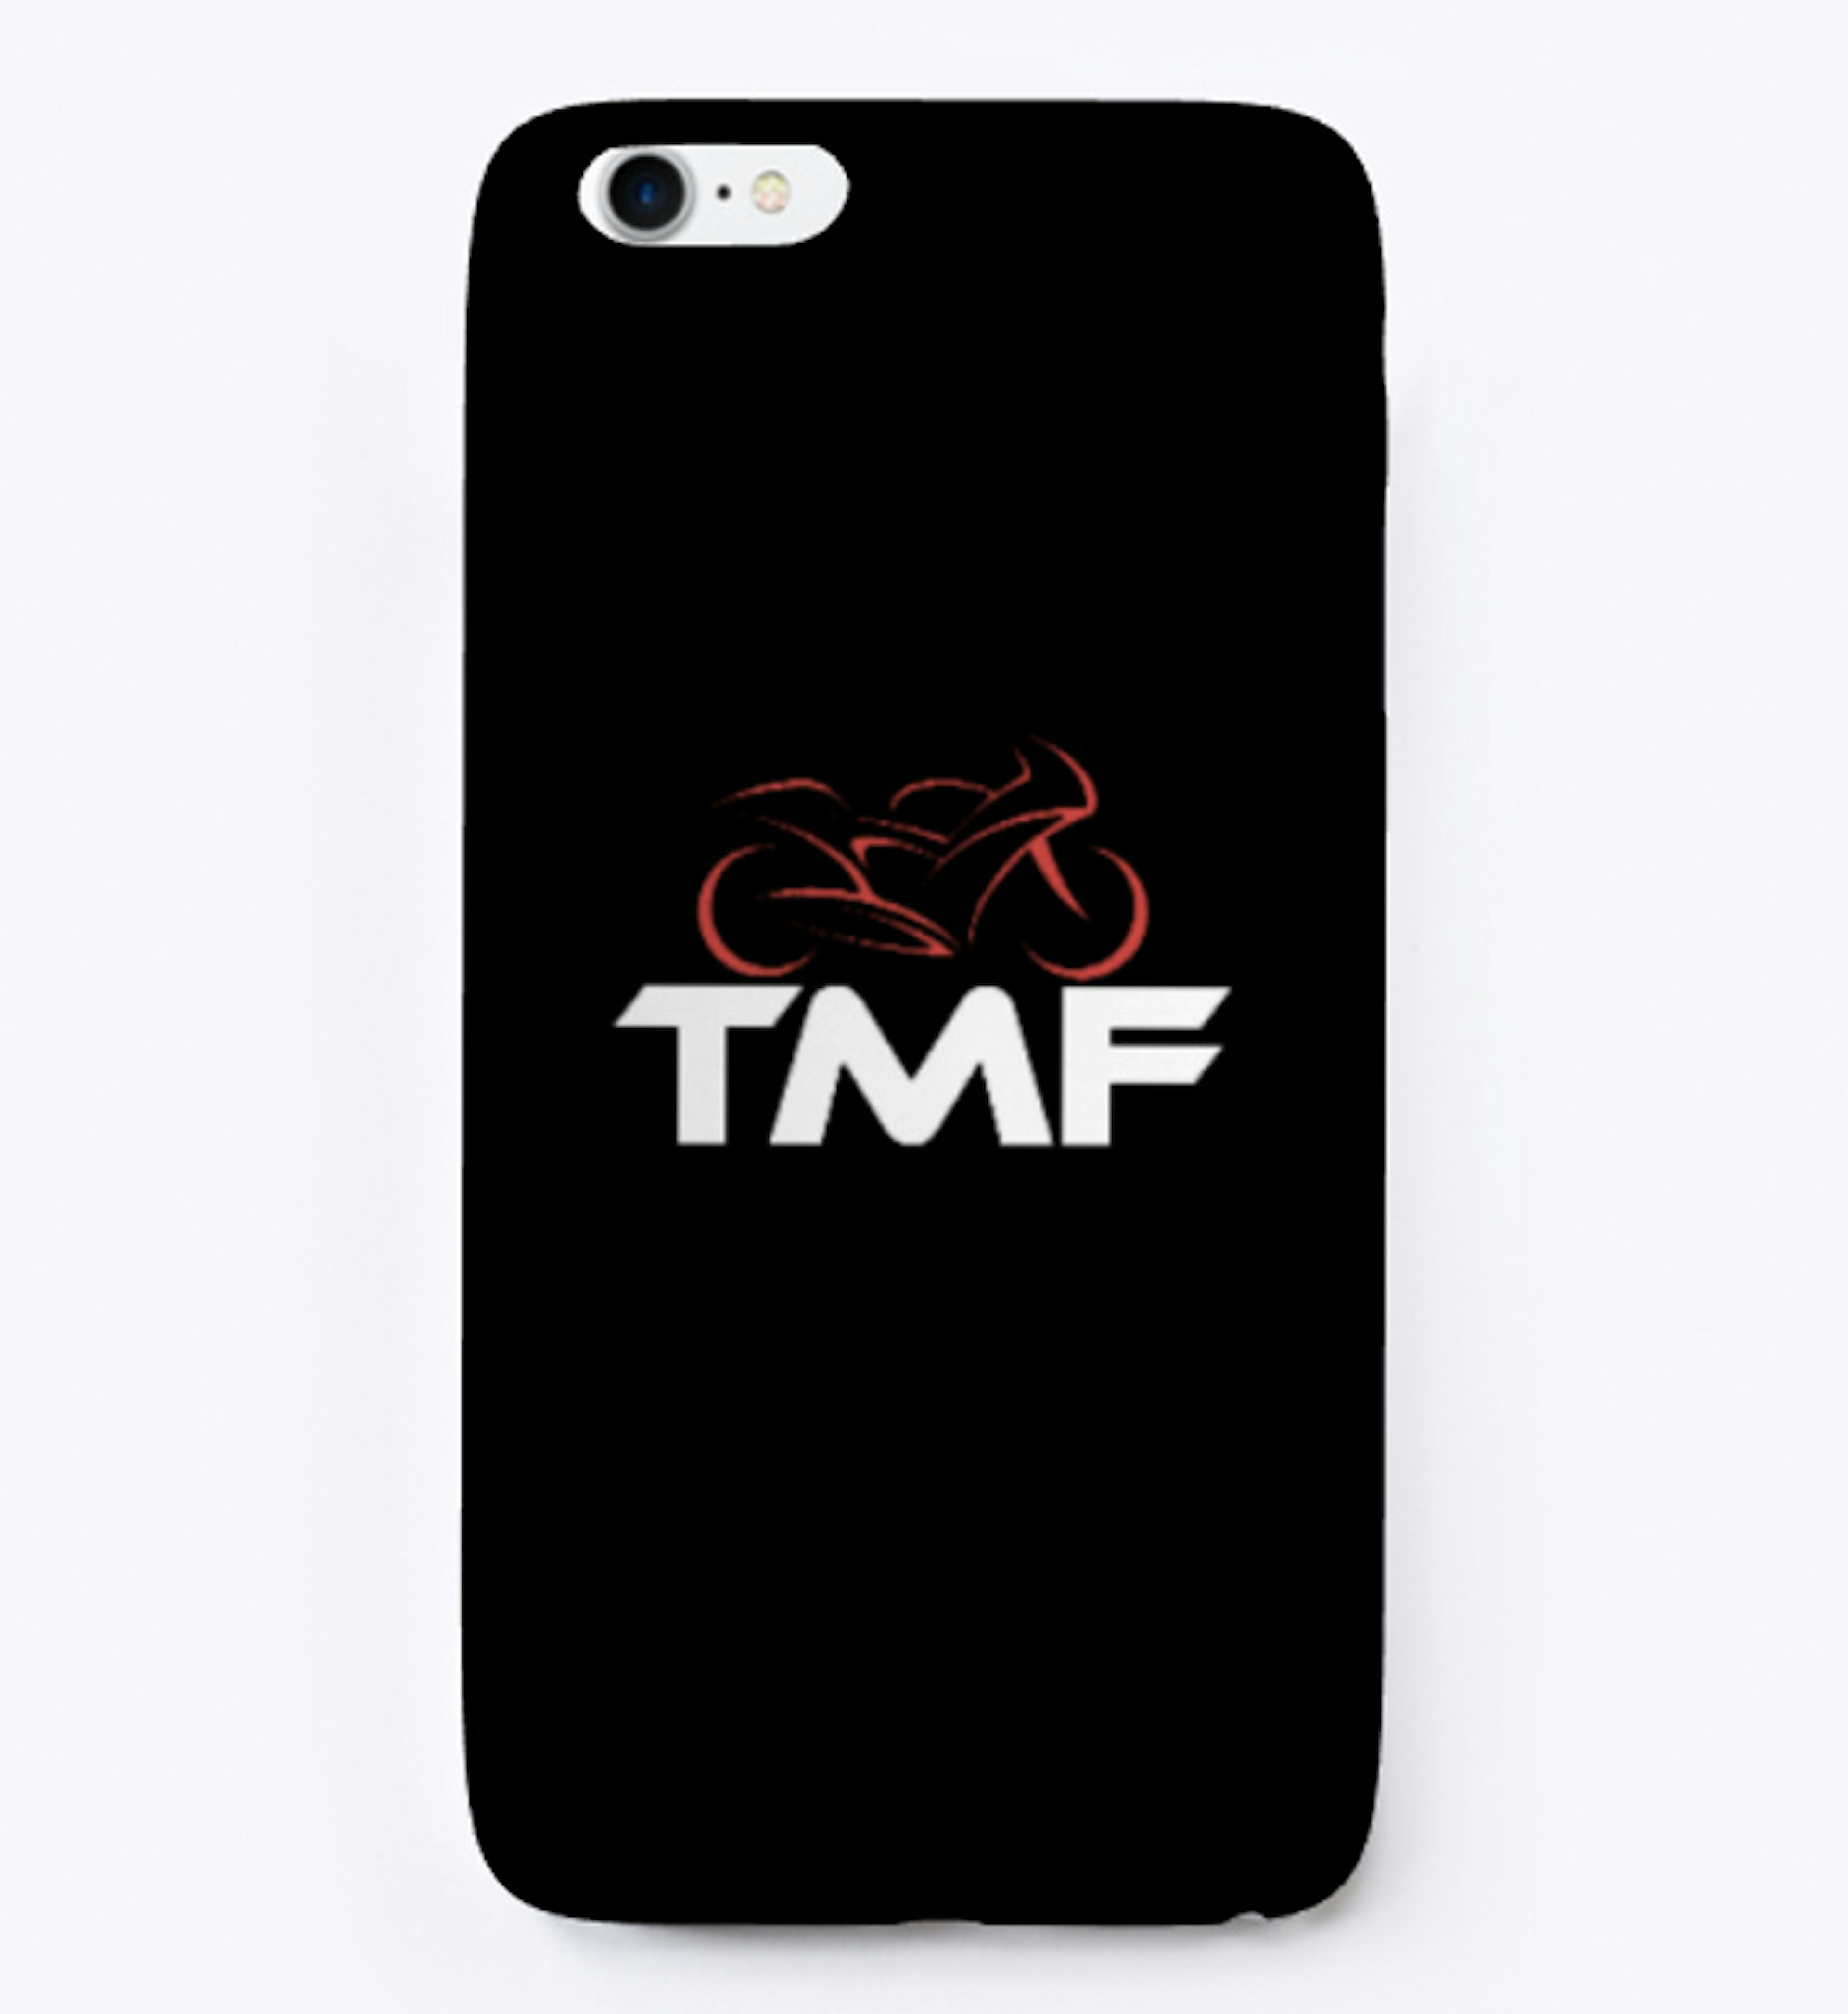 TMF iPhone Case Black